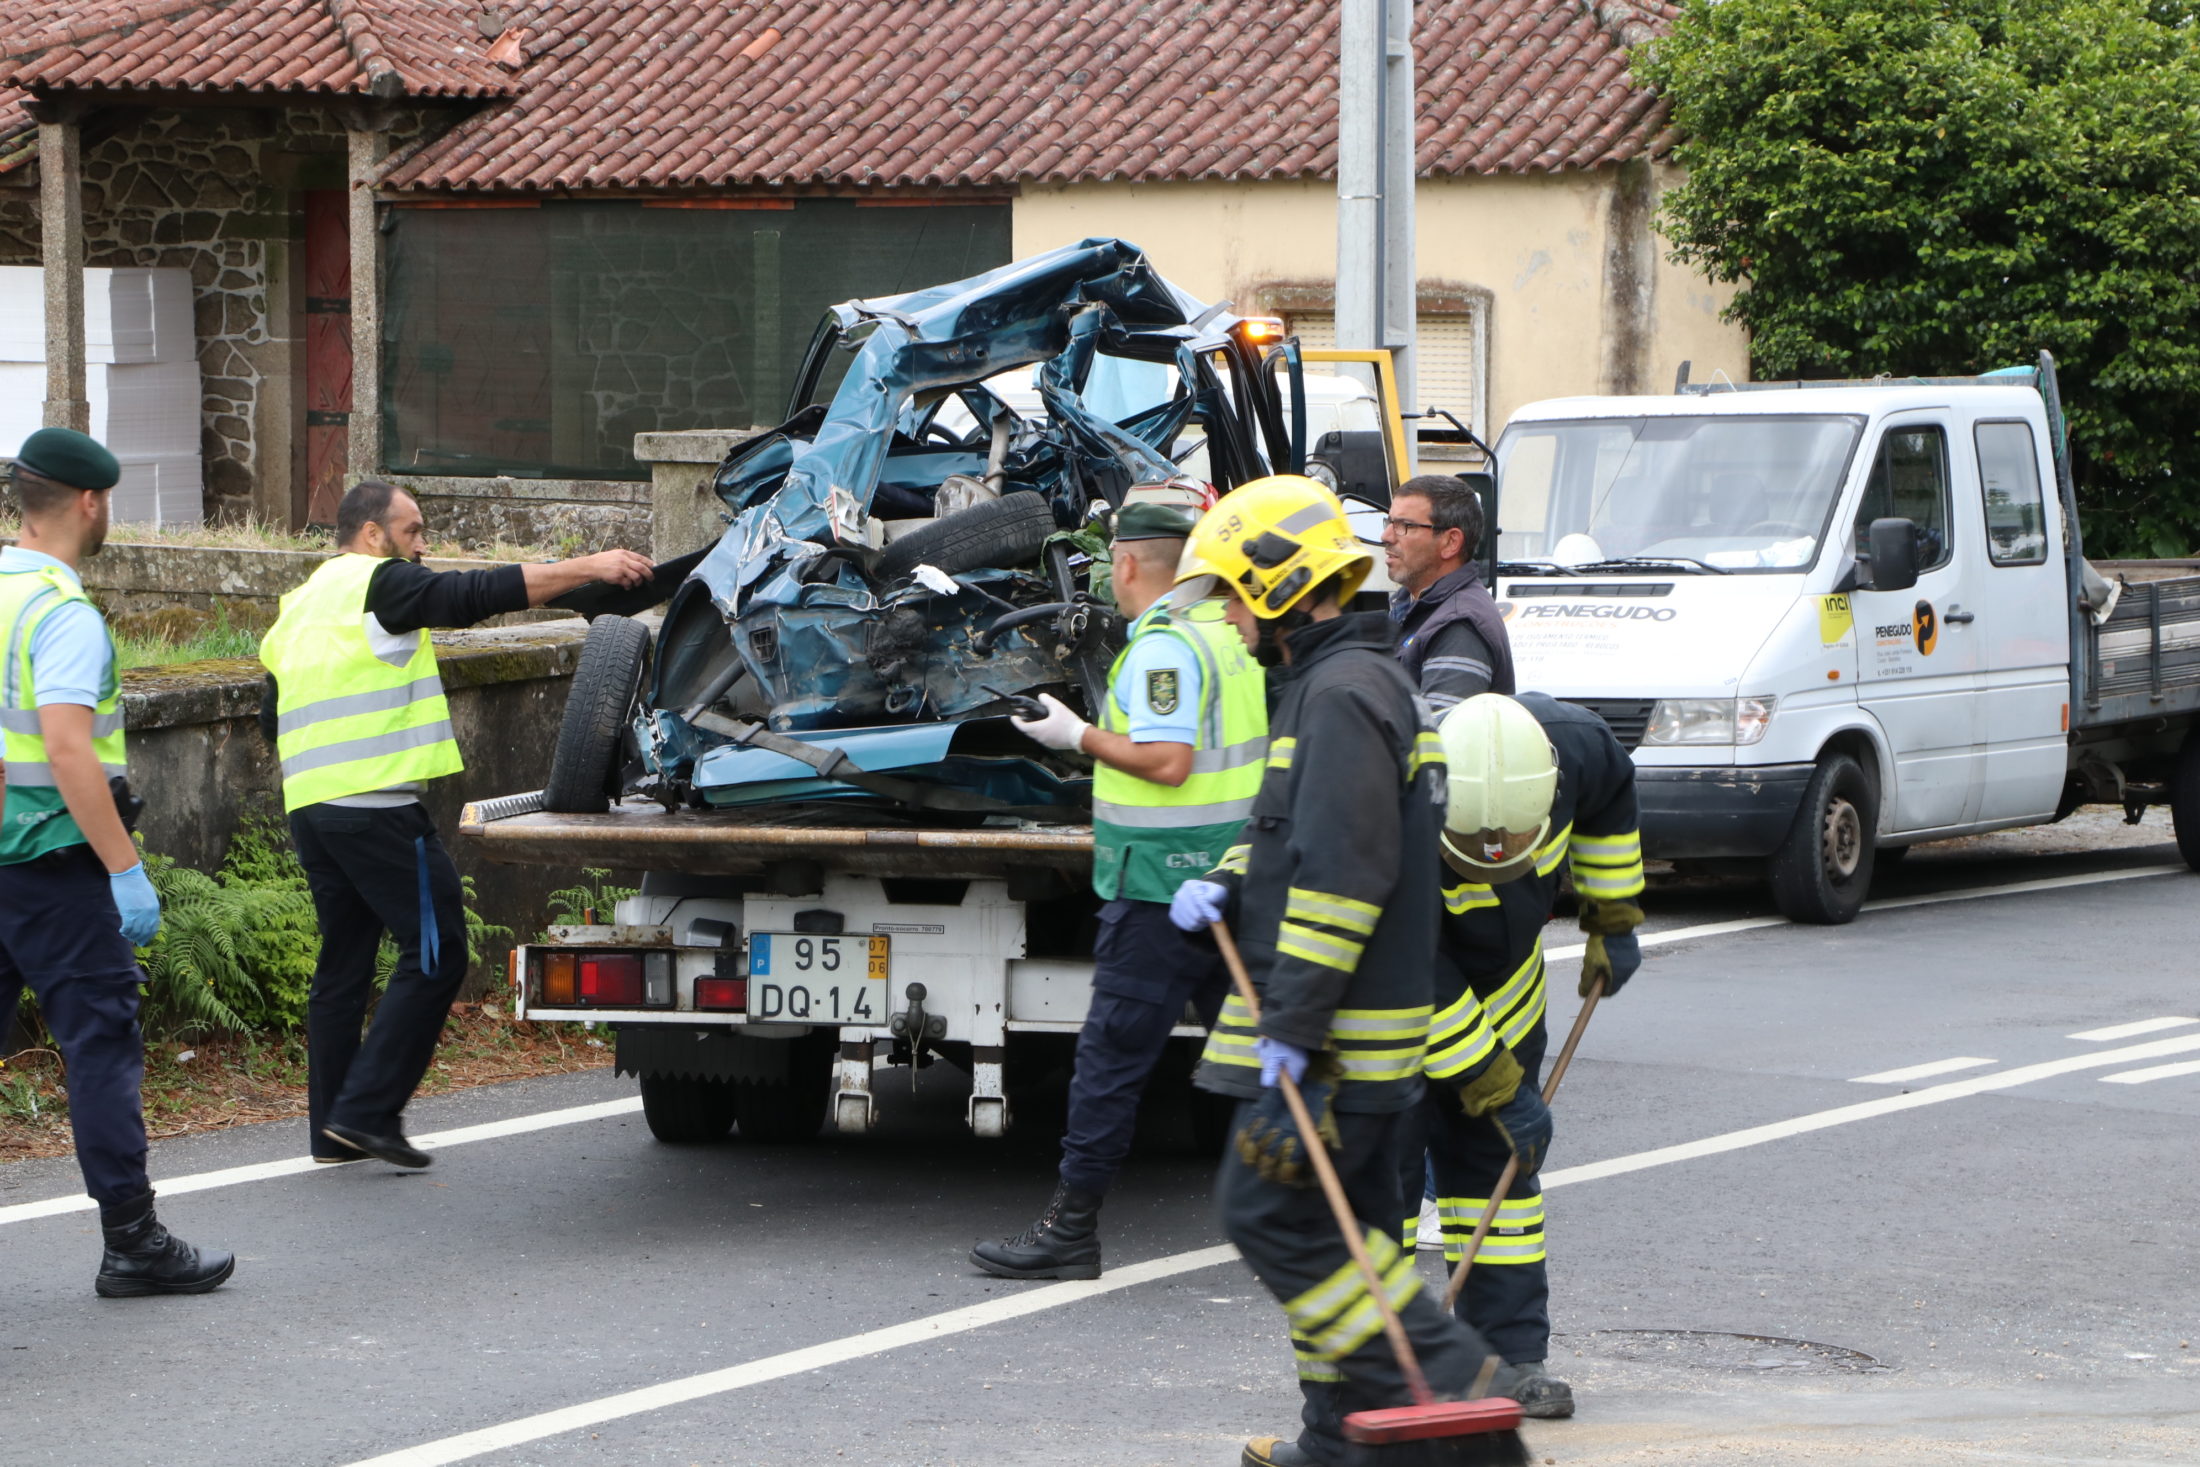 ? Investigação revela que automóvel não respeitou sinalização em acidente ferroviário com três mortos em Barcelos